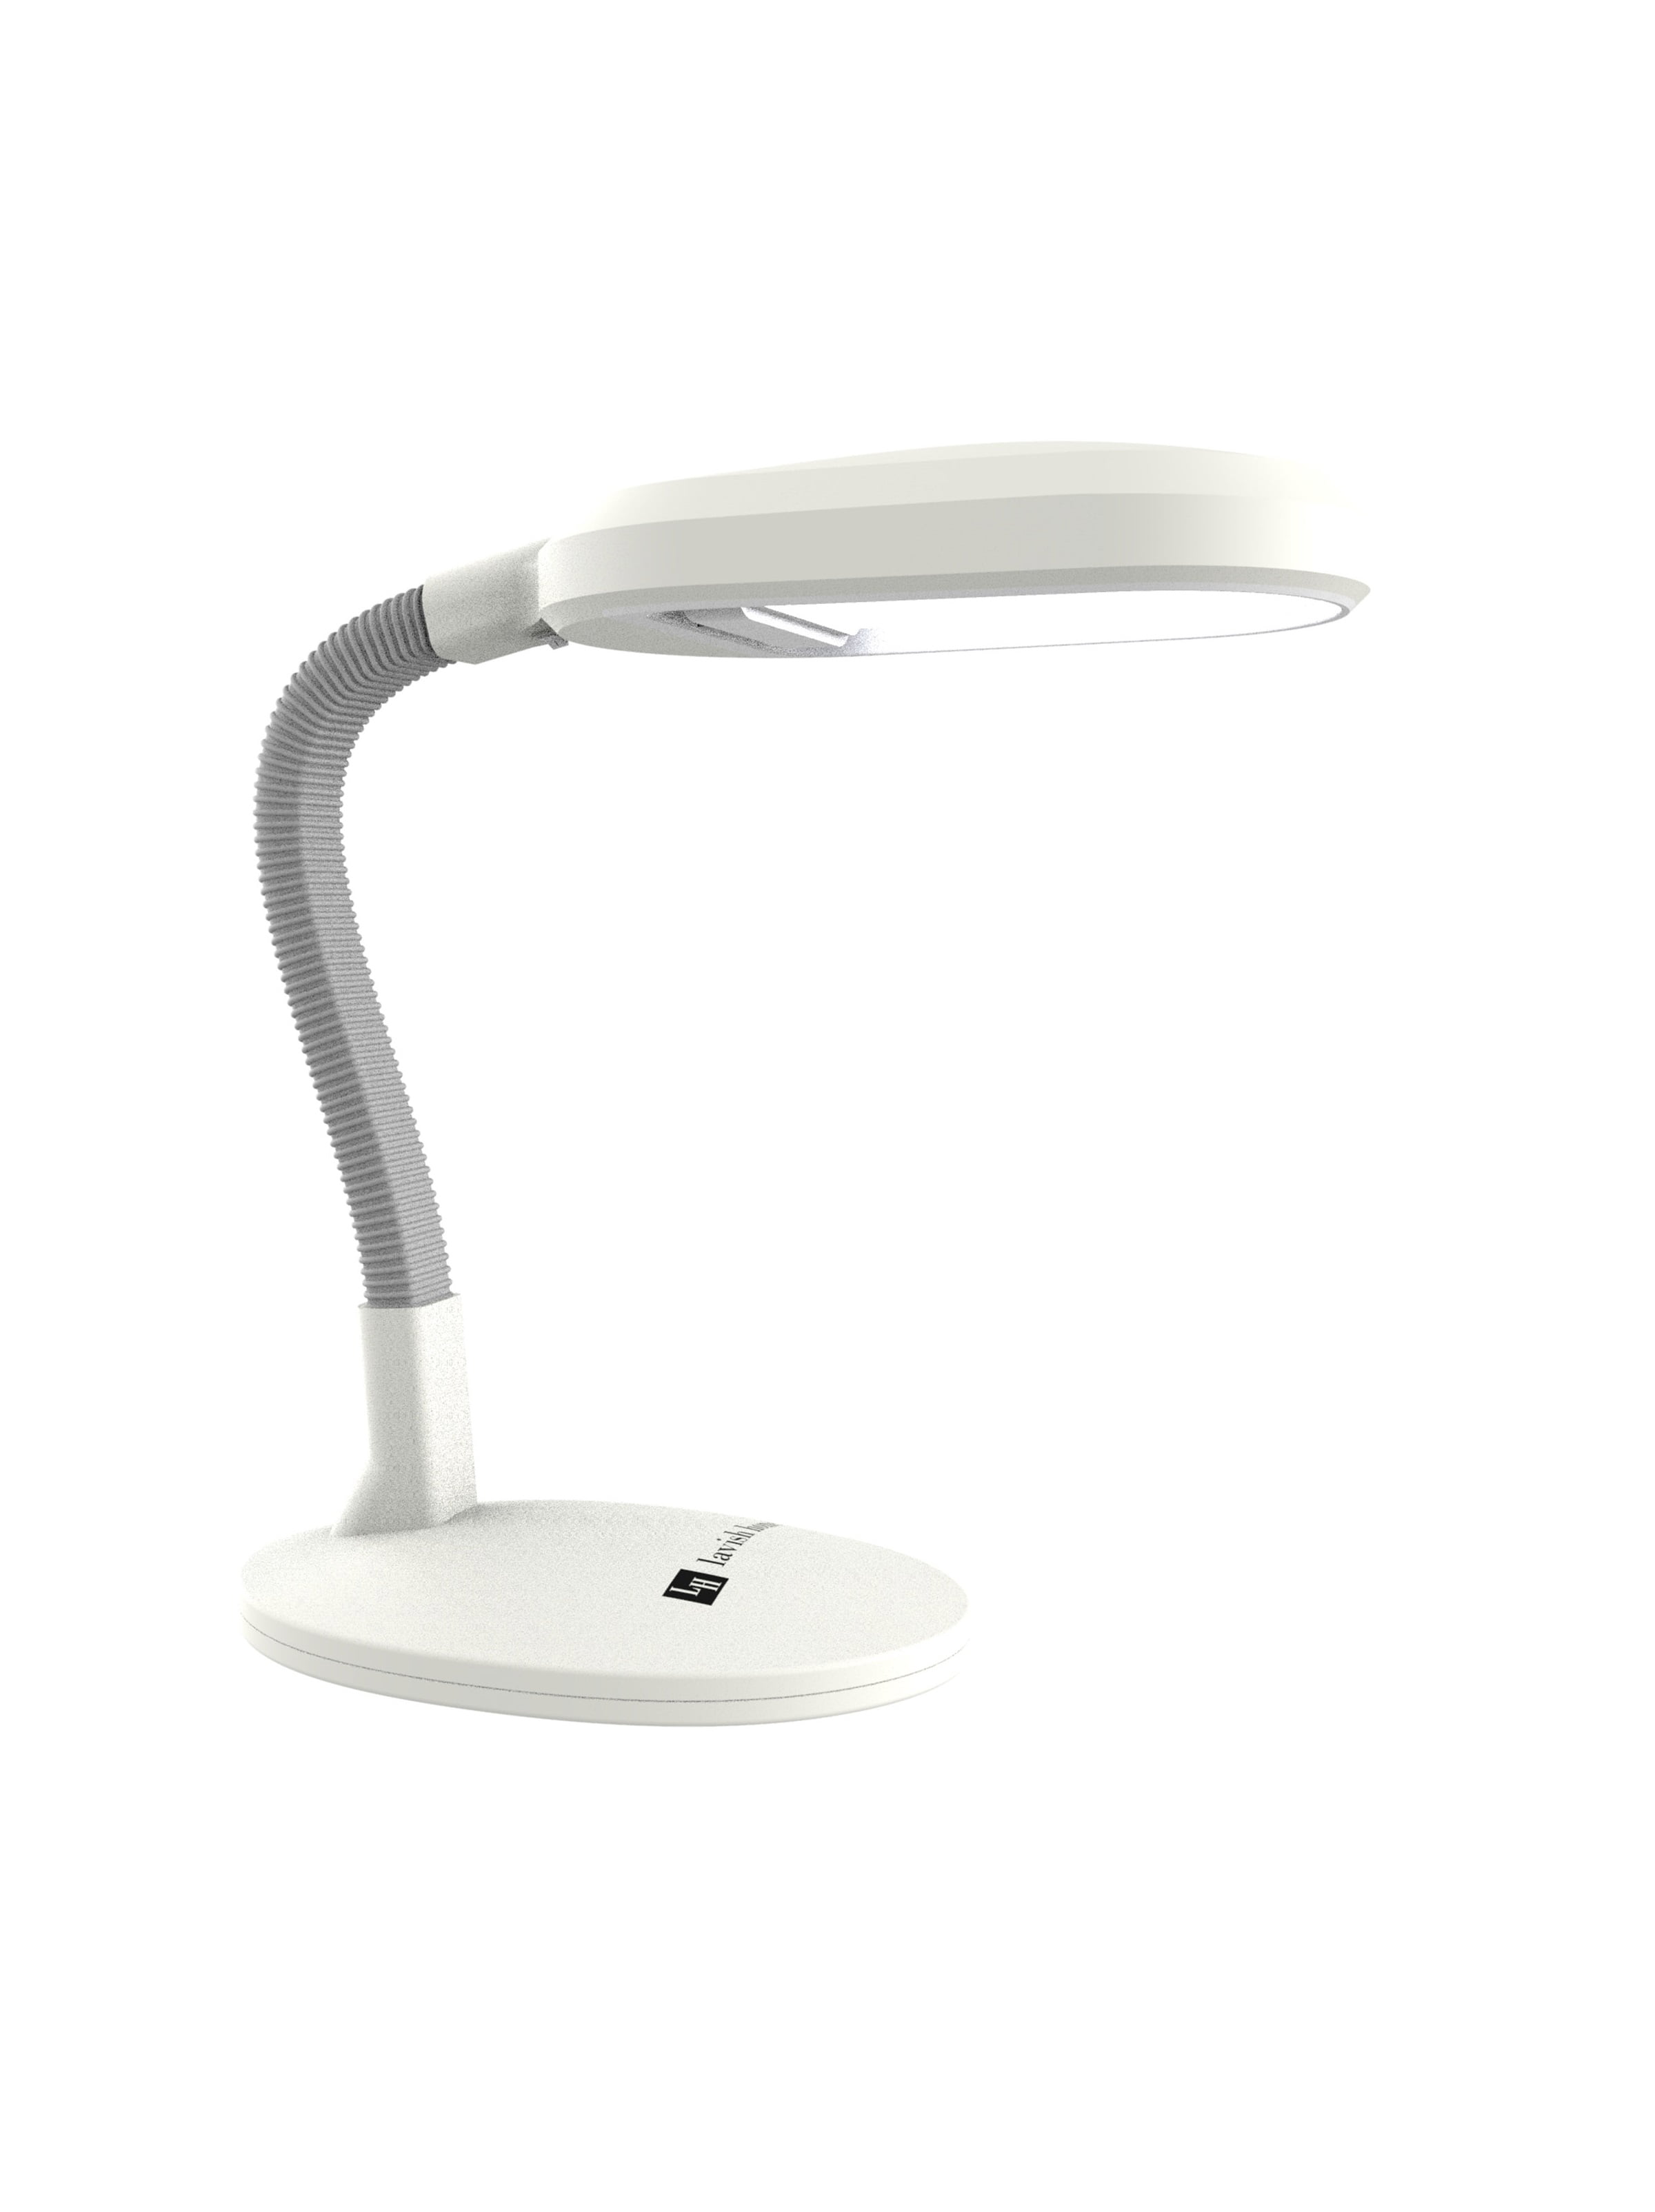 Natural Sunlight Desk Lamp Adjustable Gooseneck By Lavish Home